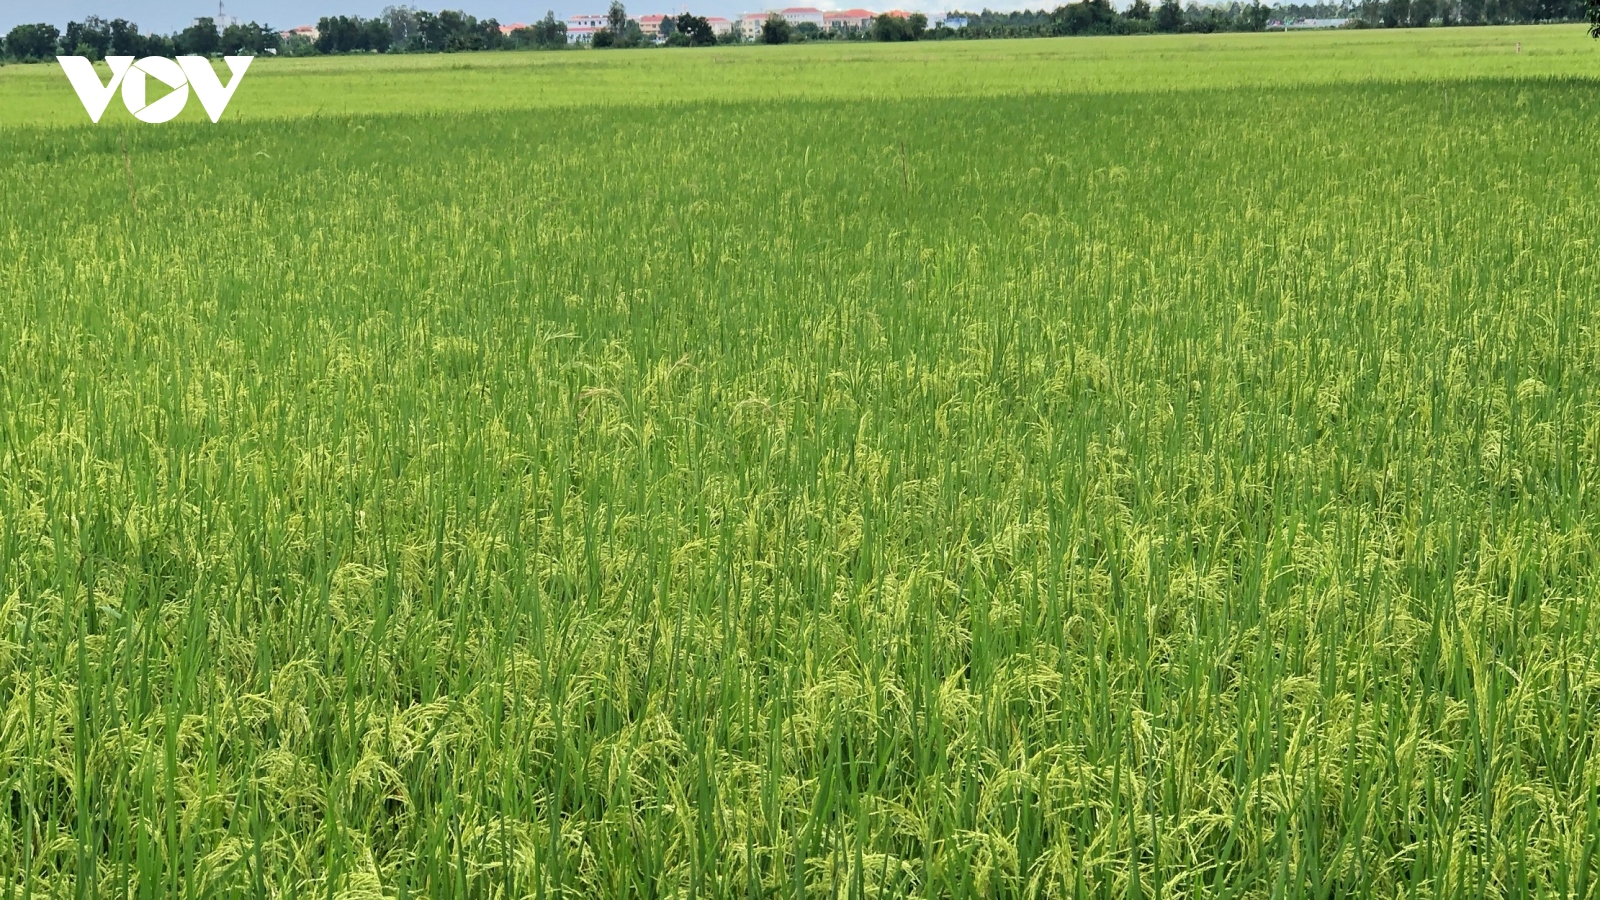 Hậu Giang chưa phát hiện hộ nông dân sử dụng giống lúa Thiên Đàng